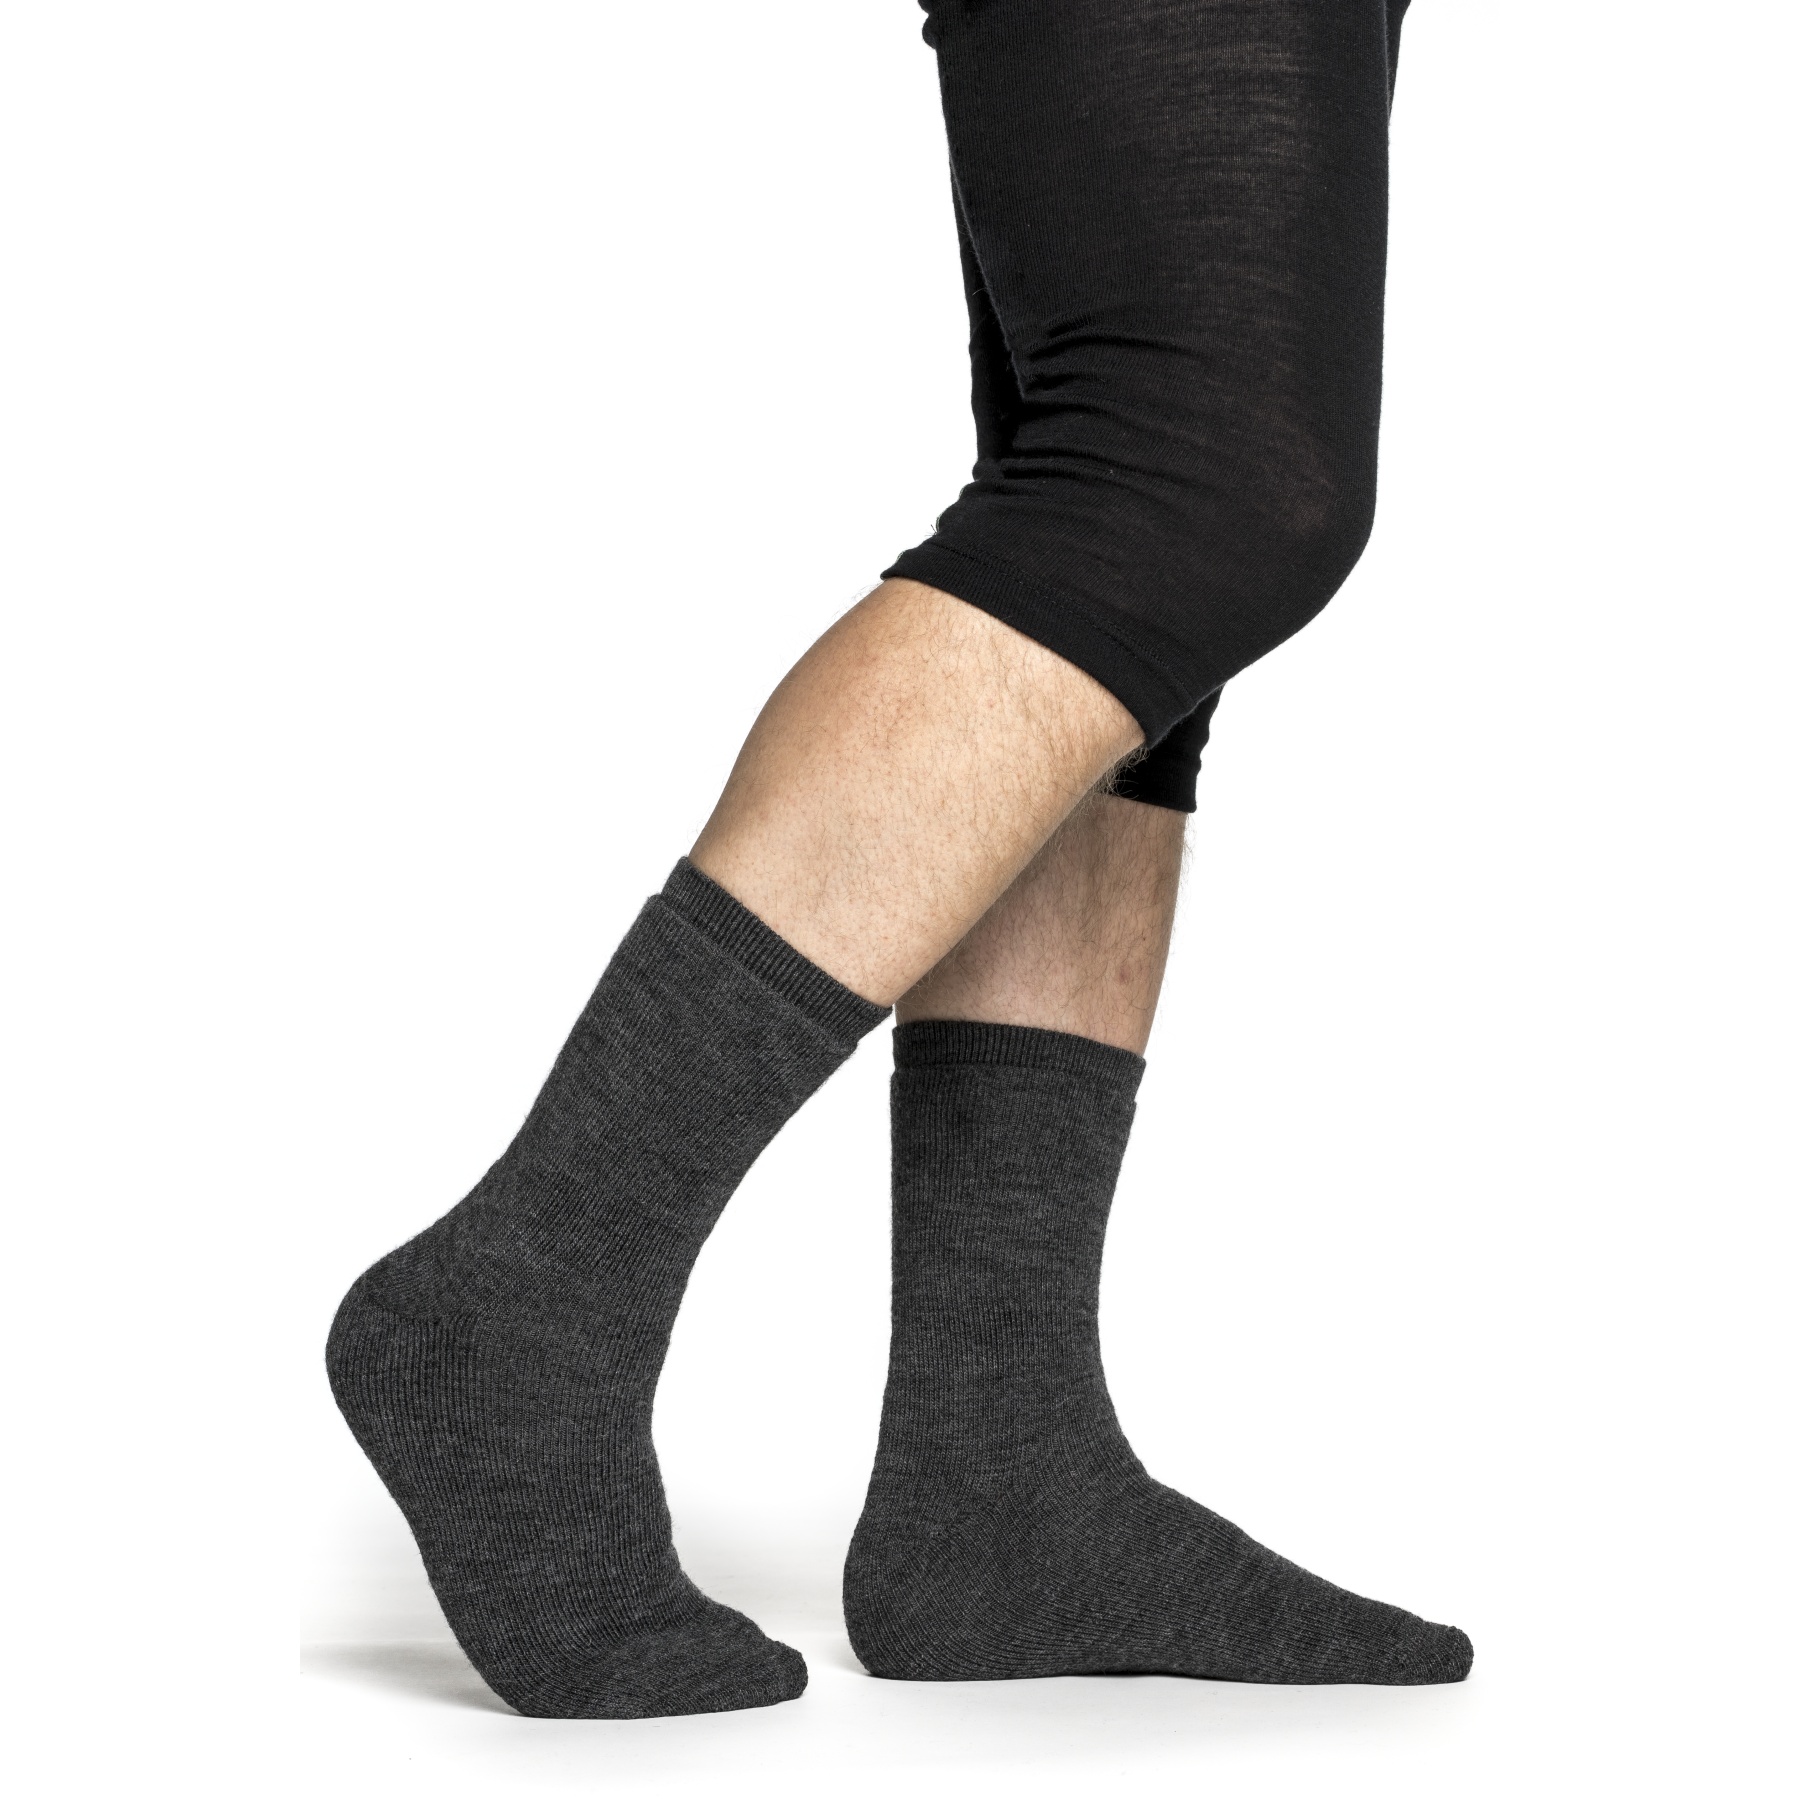 Produktbild von Woolpower Socken 400 - grey